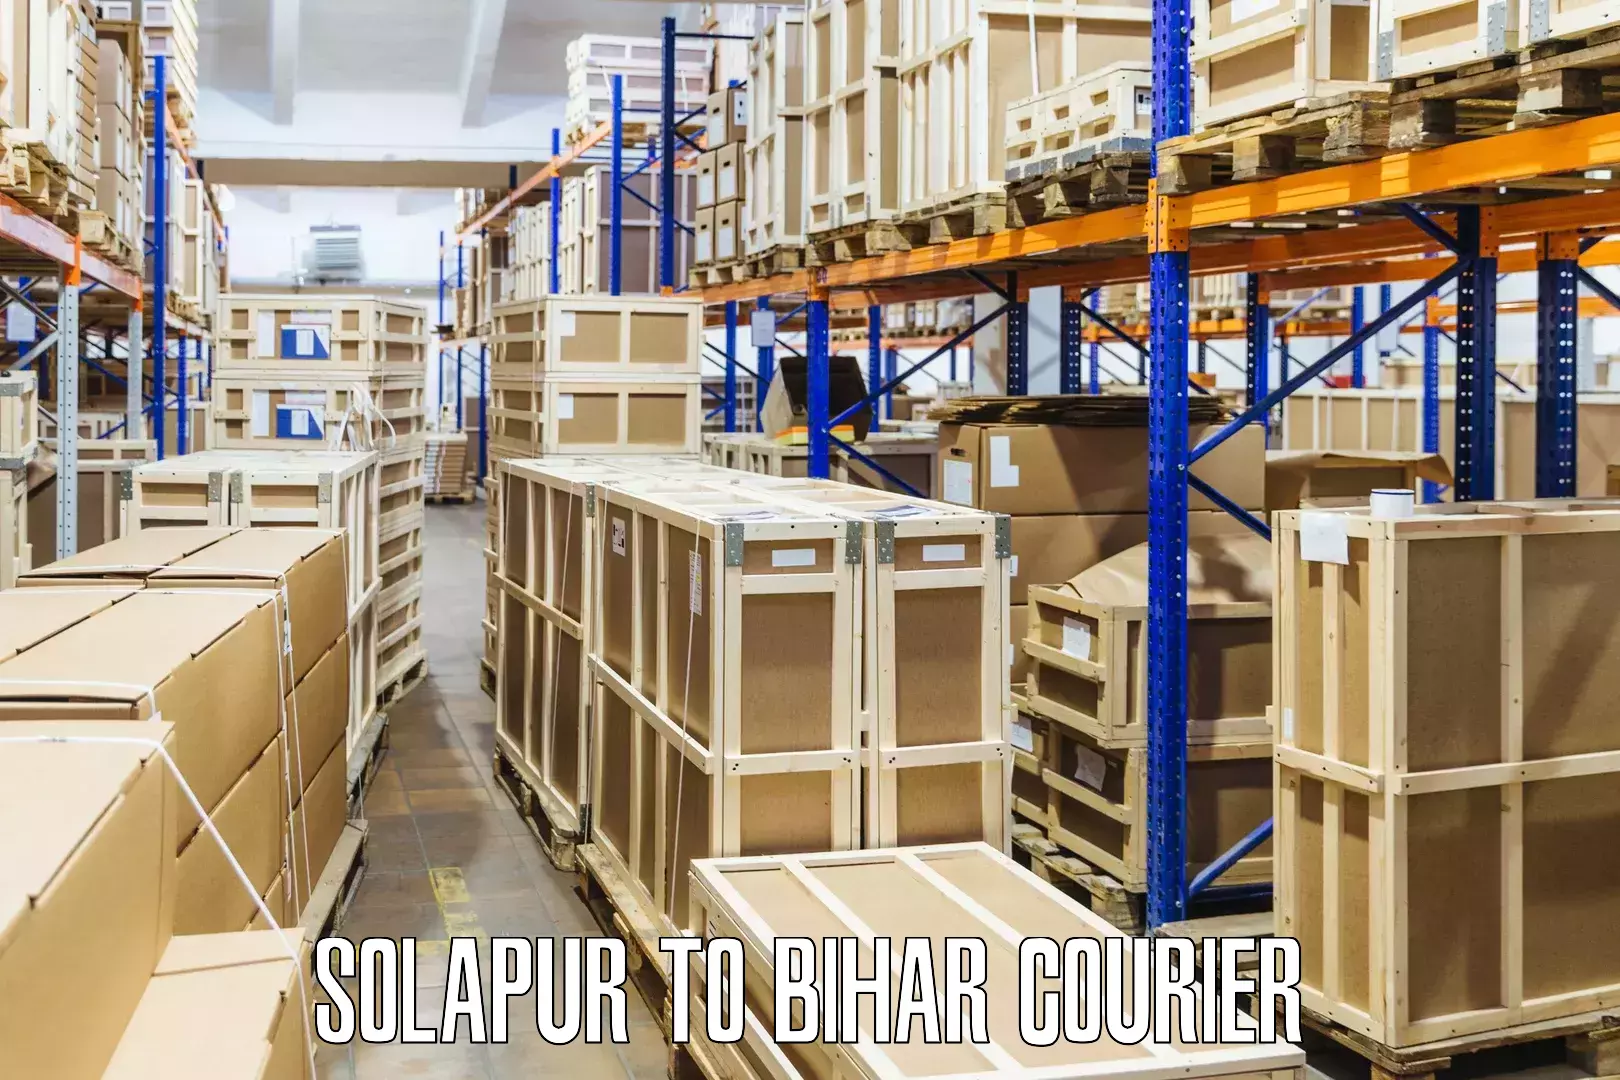 Reliable parcel services Solapur to Bihar